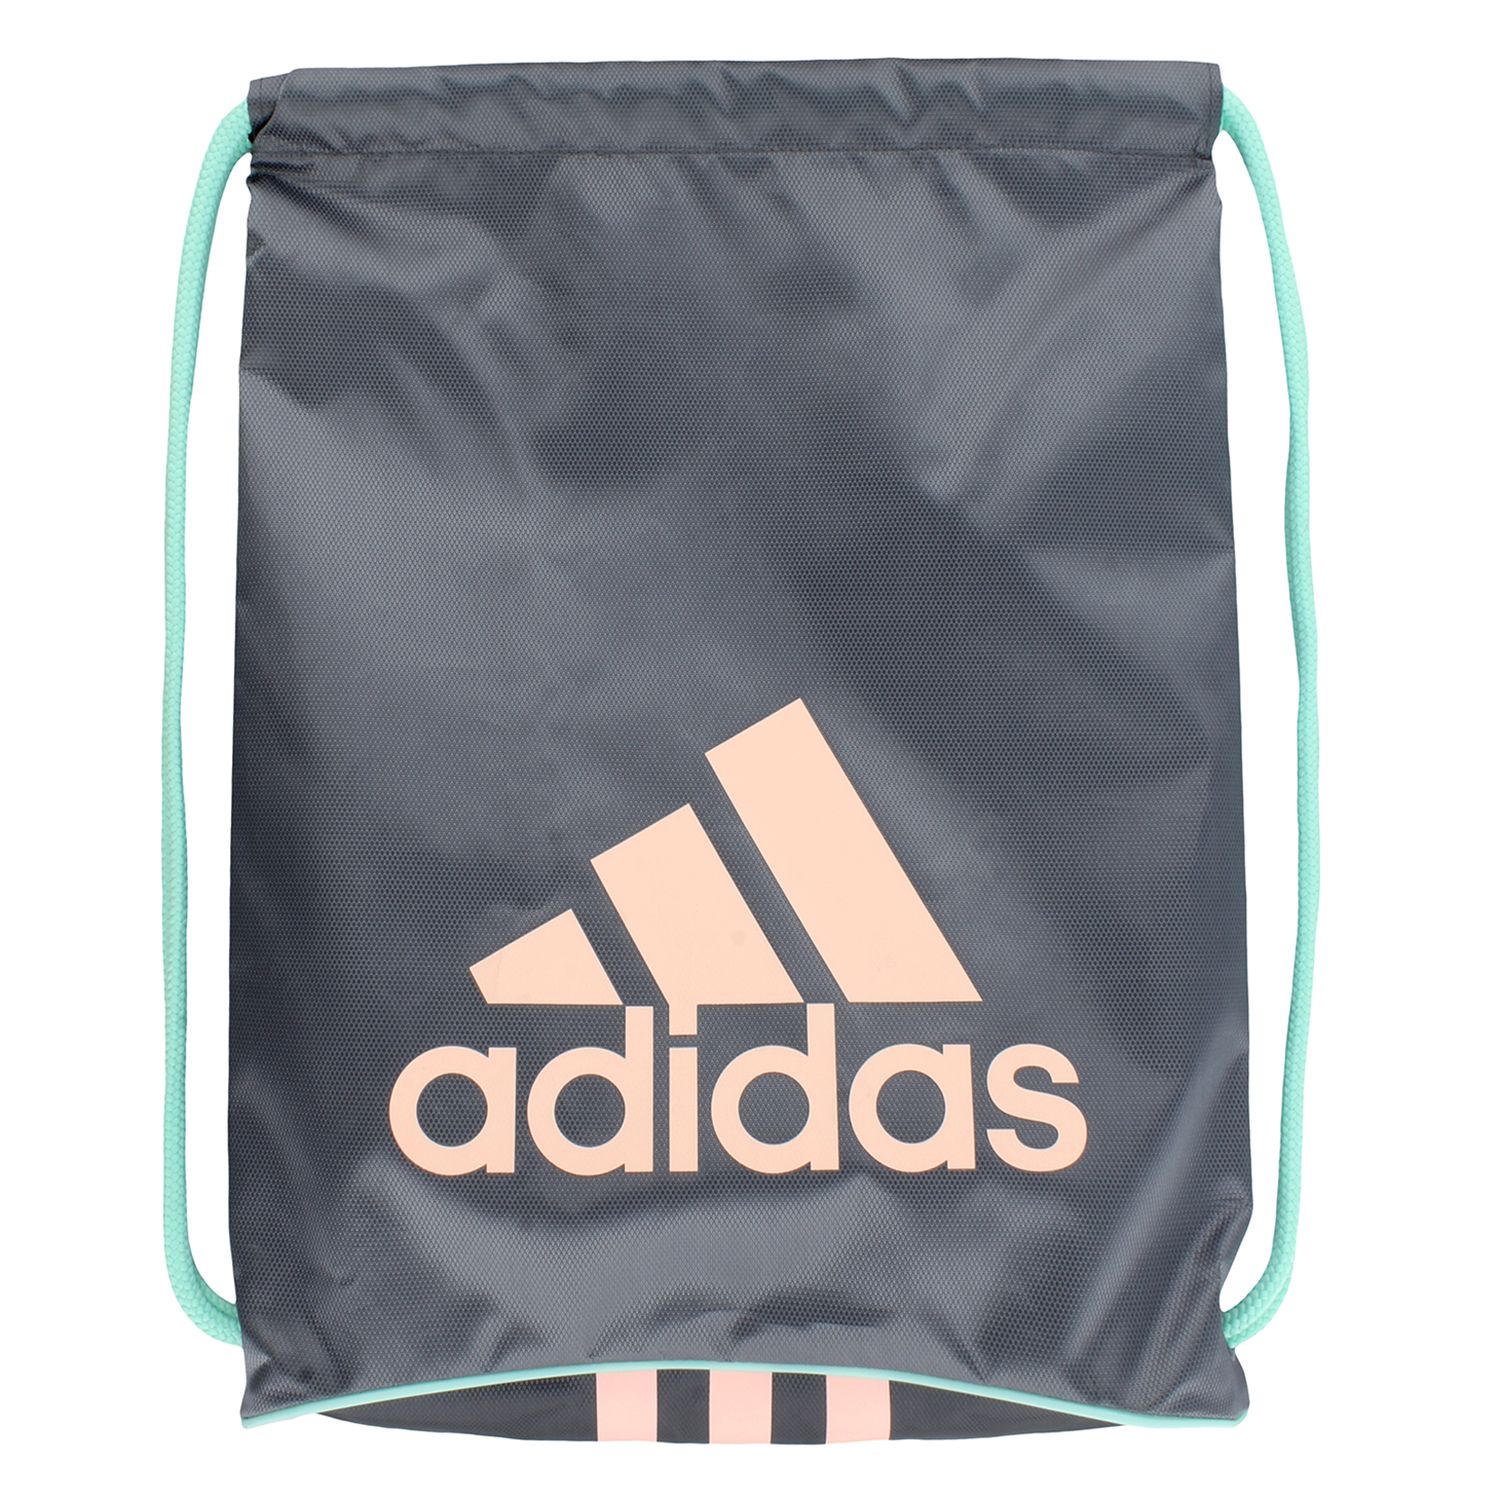 adidas drawstring backpack